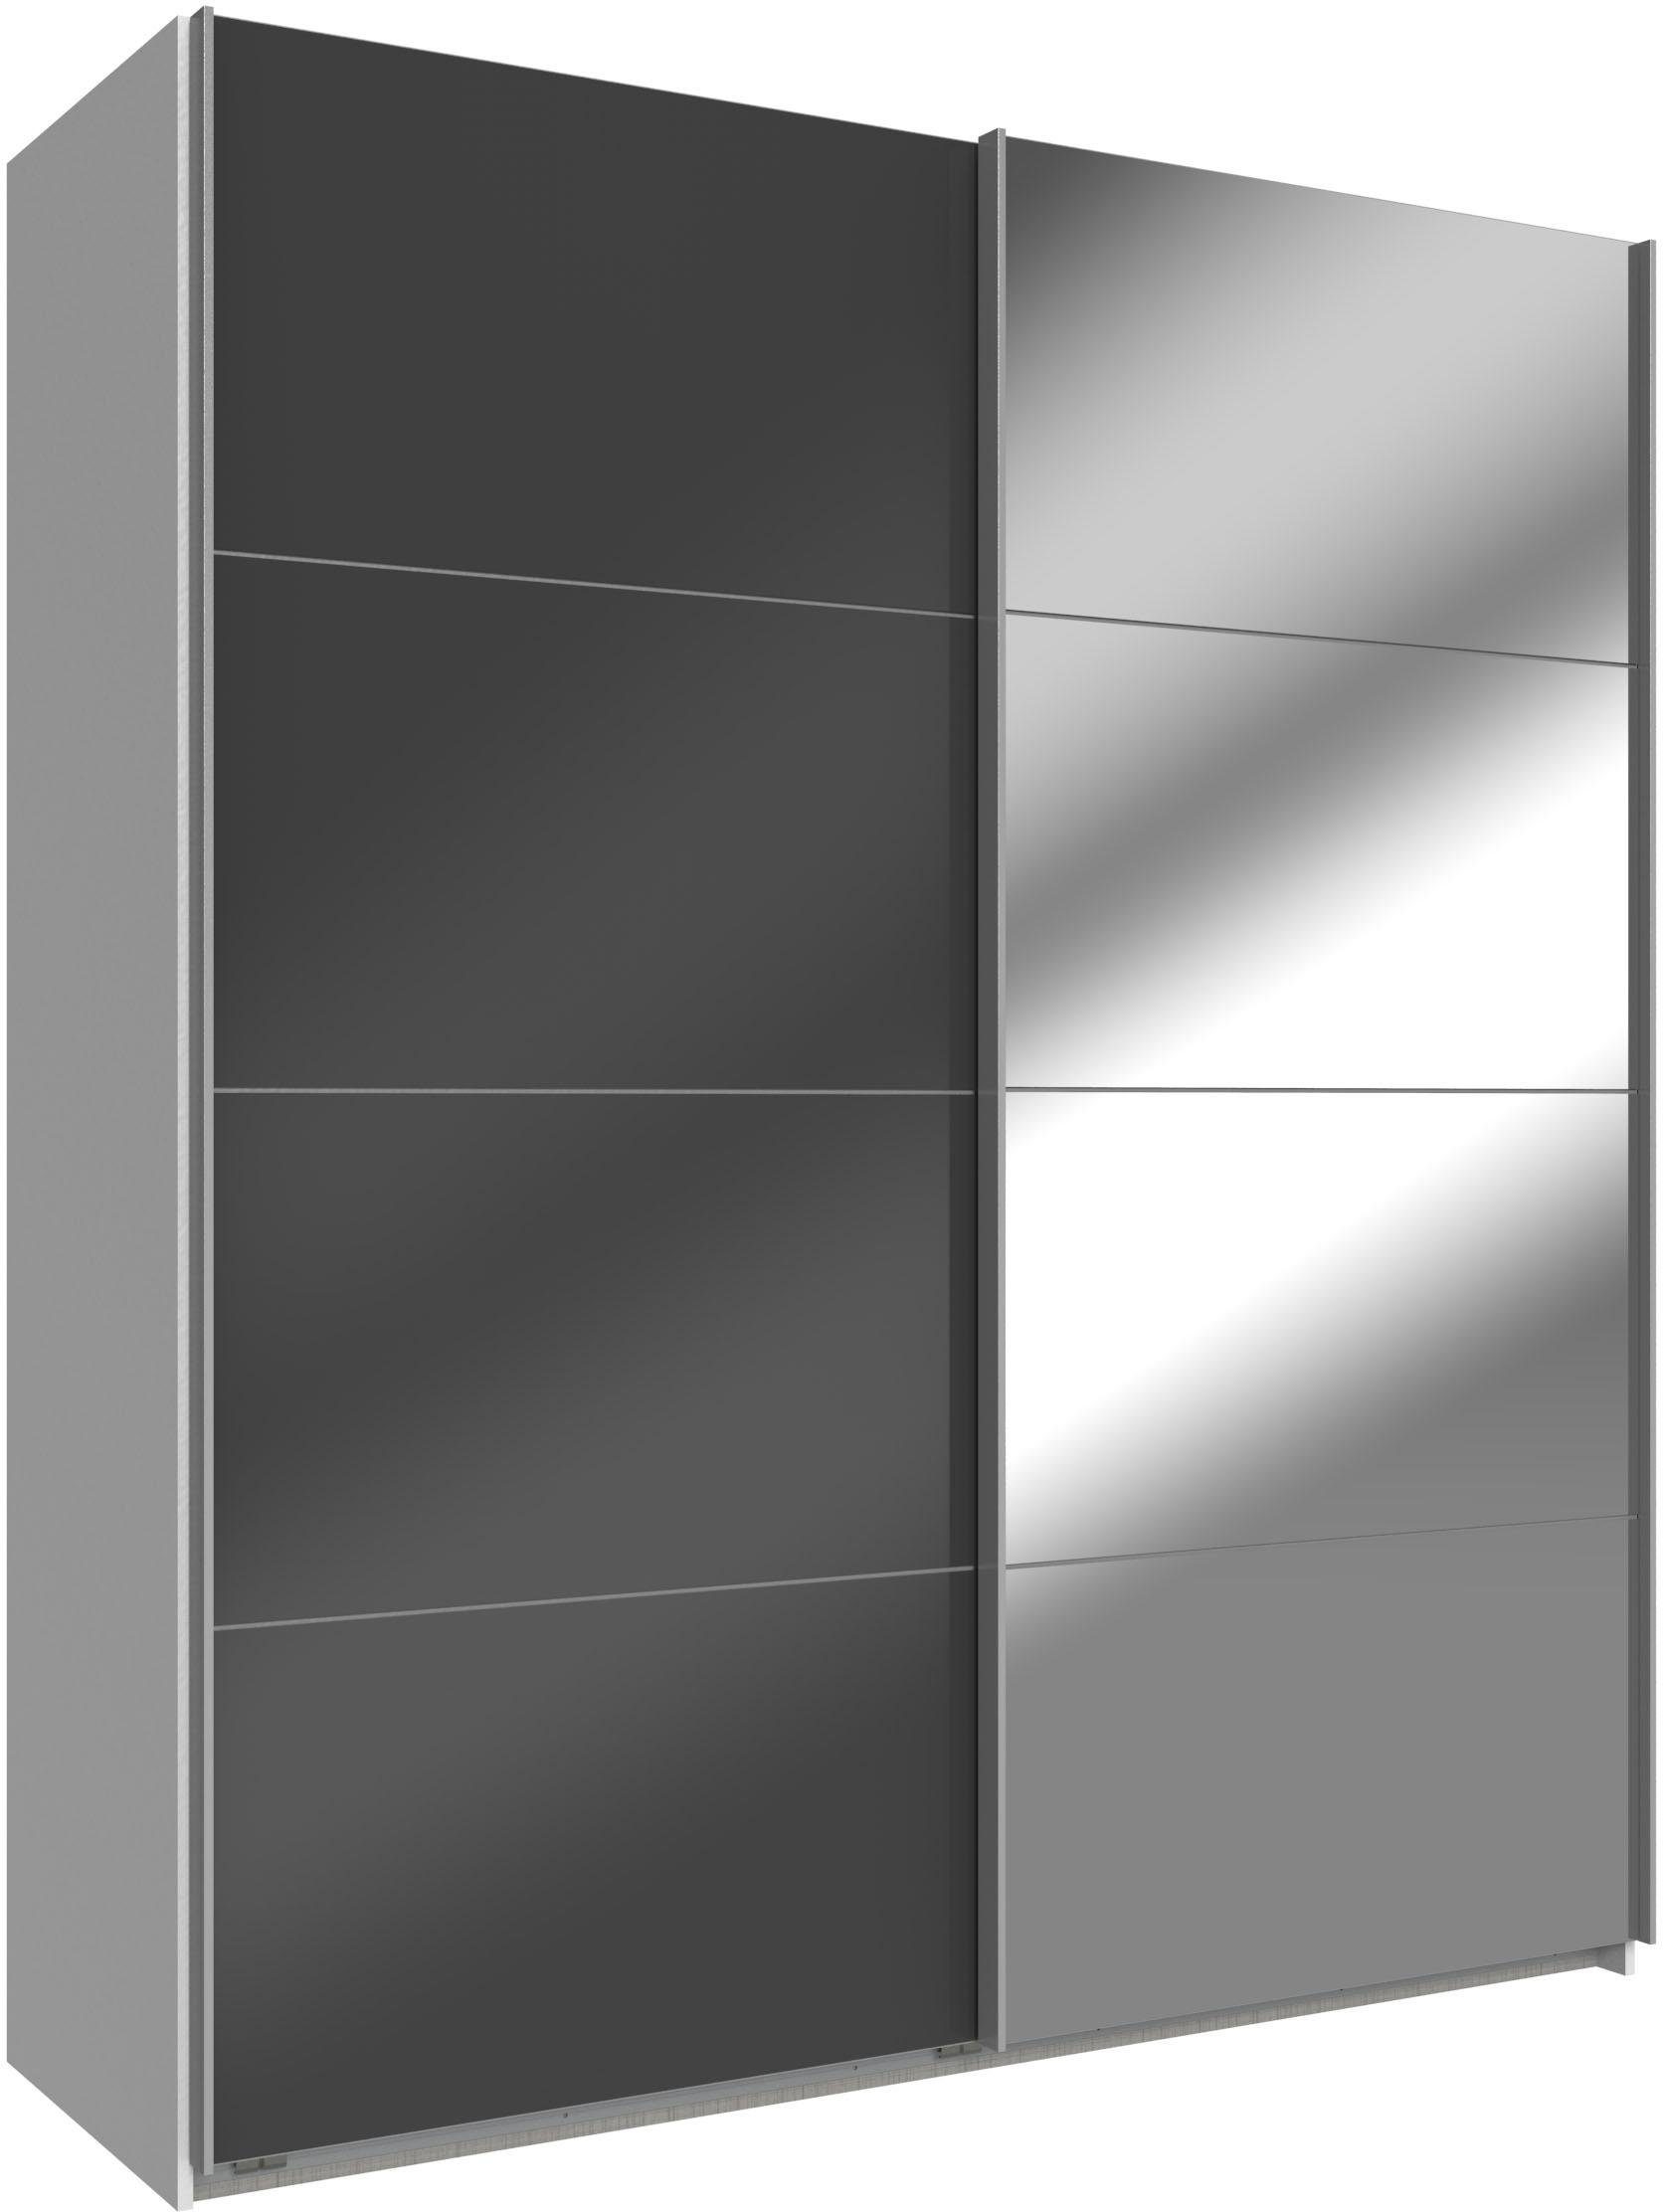 Wimex Schwebetürenschrank Easy mit Glas und Spiegel weiß, Grauglas/Spiegel